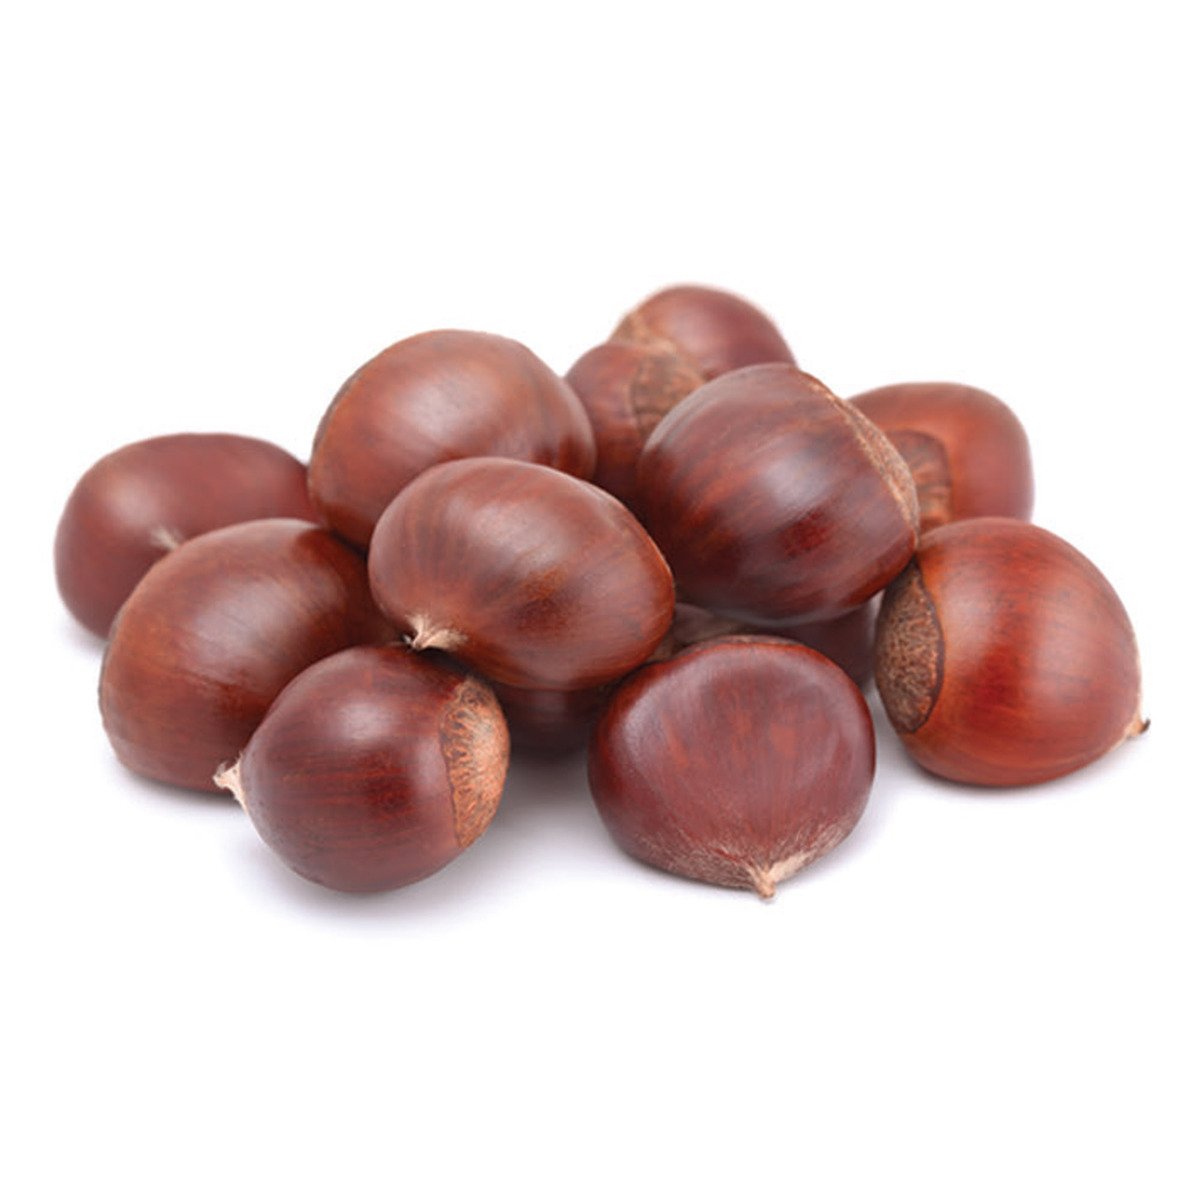 اشتري قم بشراء كستناء صيني 250 جم Online at Best Price من الموقع - من لولو هايبر ماركت Freshly Nuts في السعودية